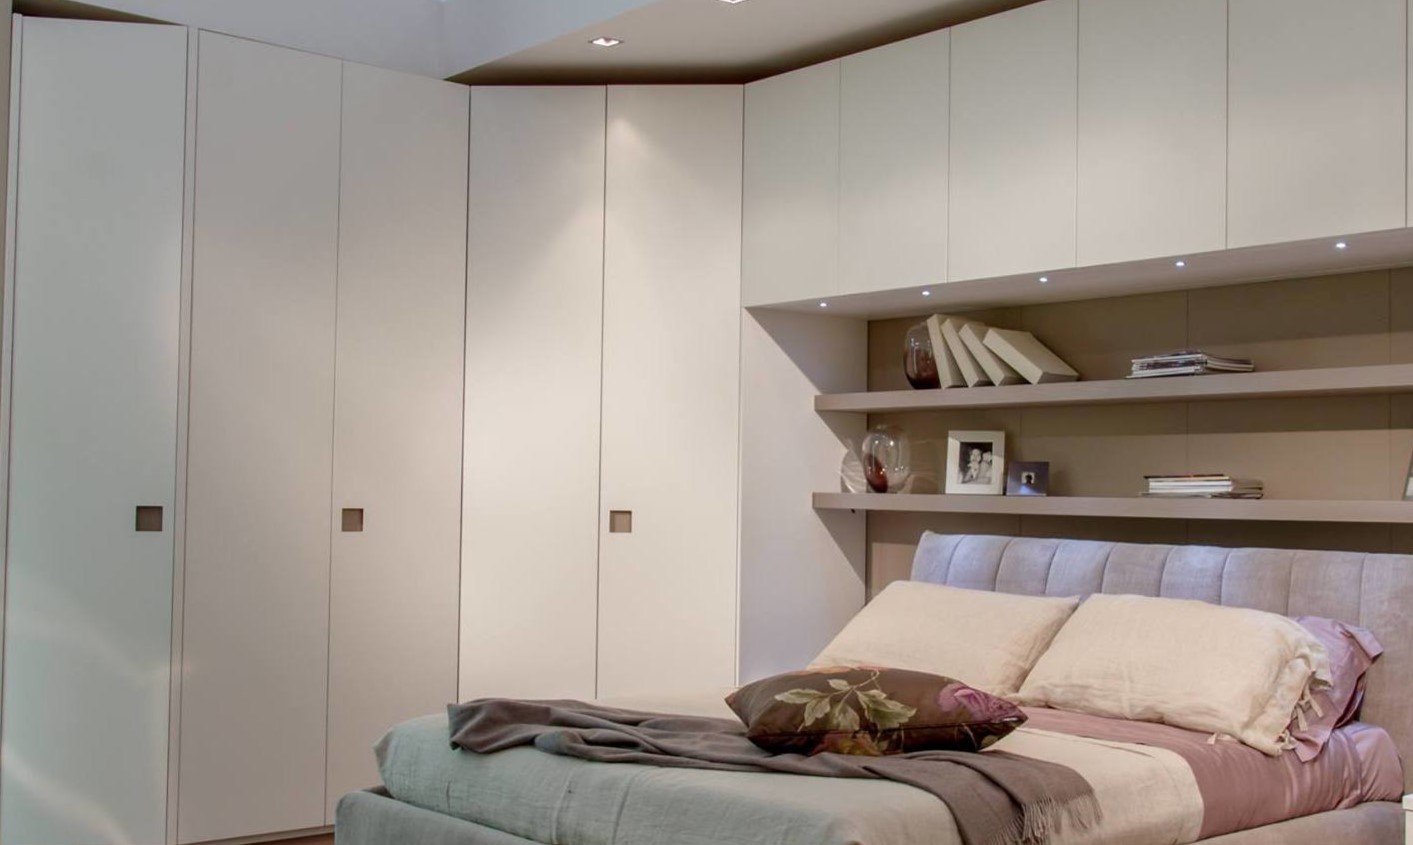 Встроенный белый шкаф можно расположить вокруг кровати в спальне